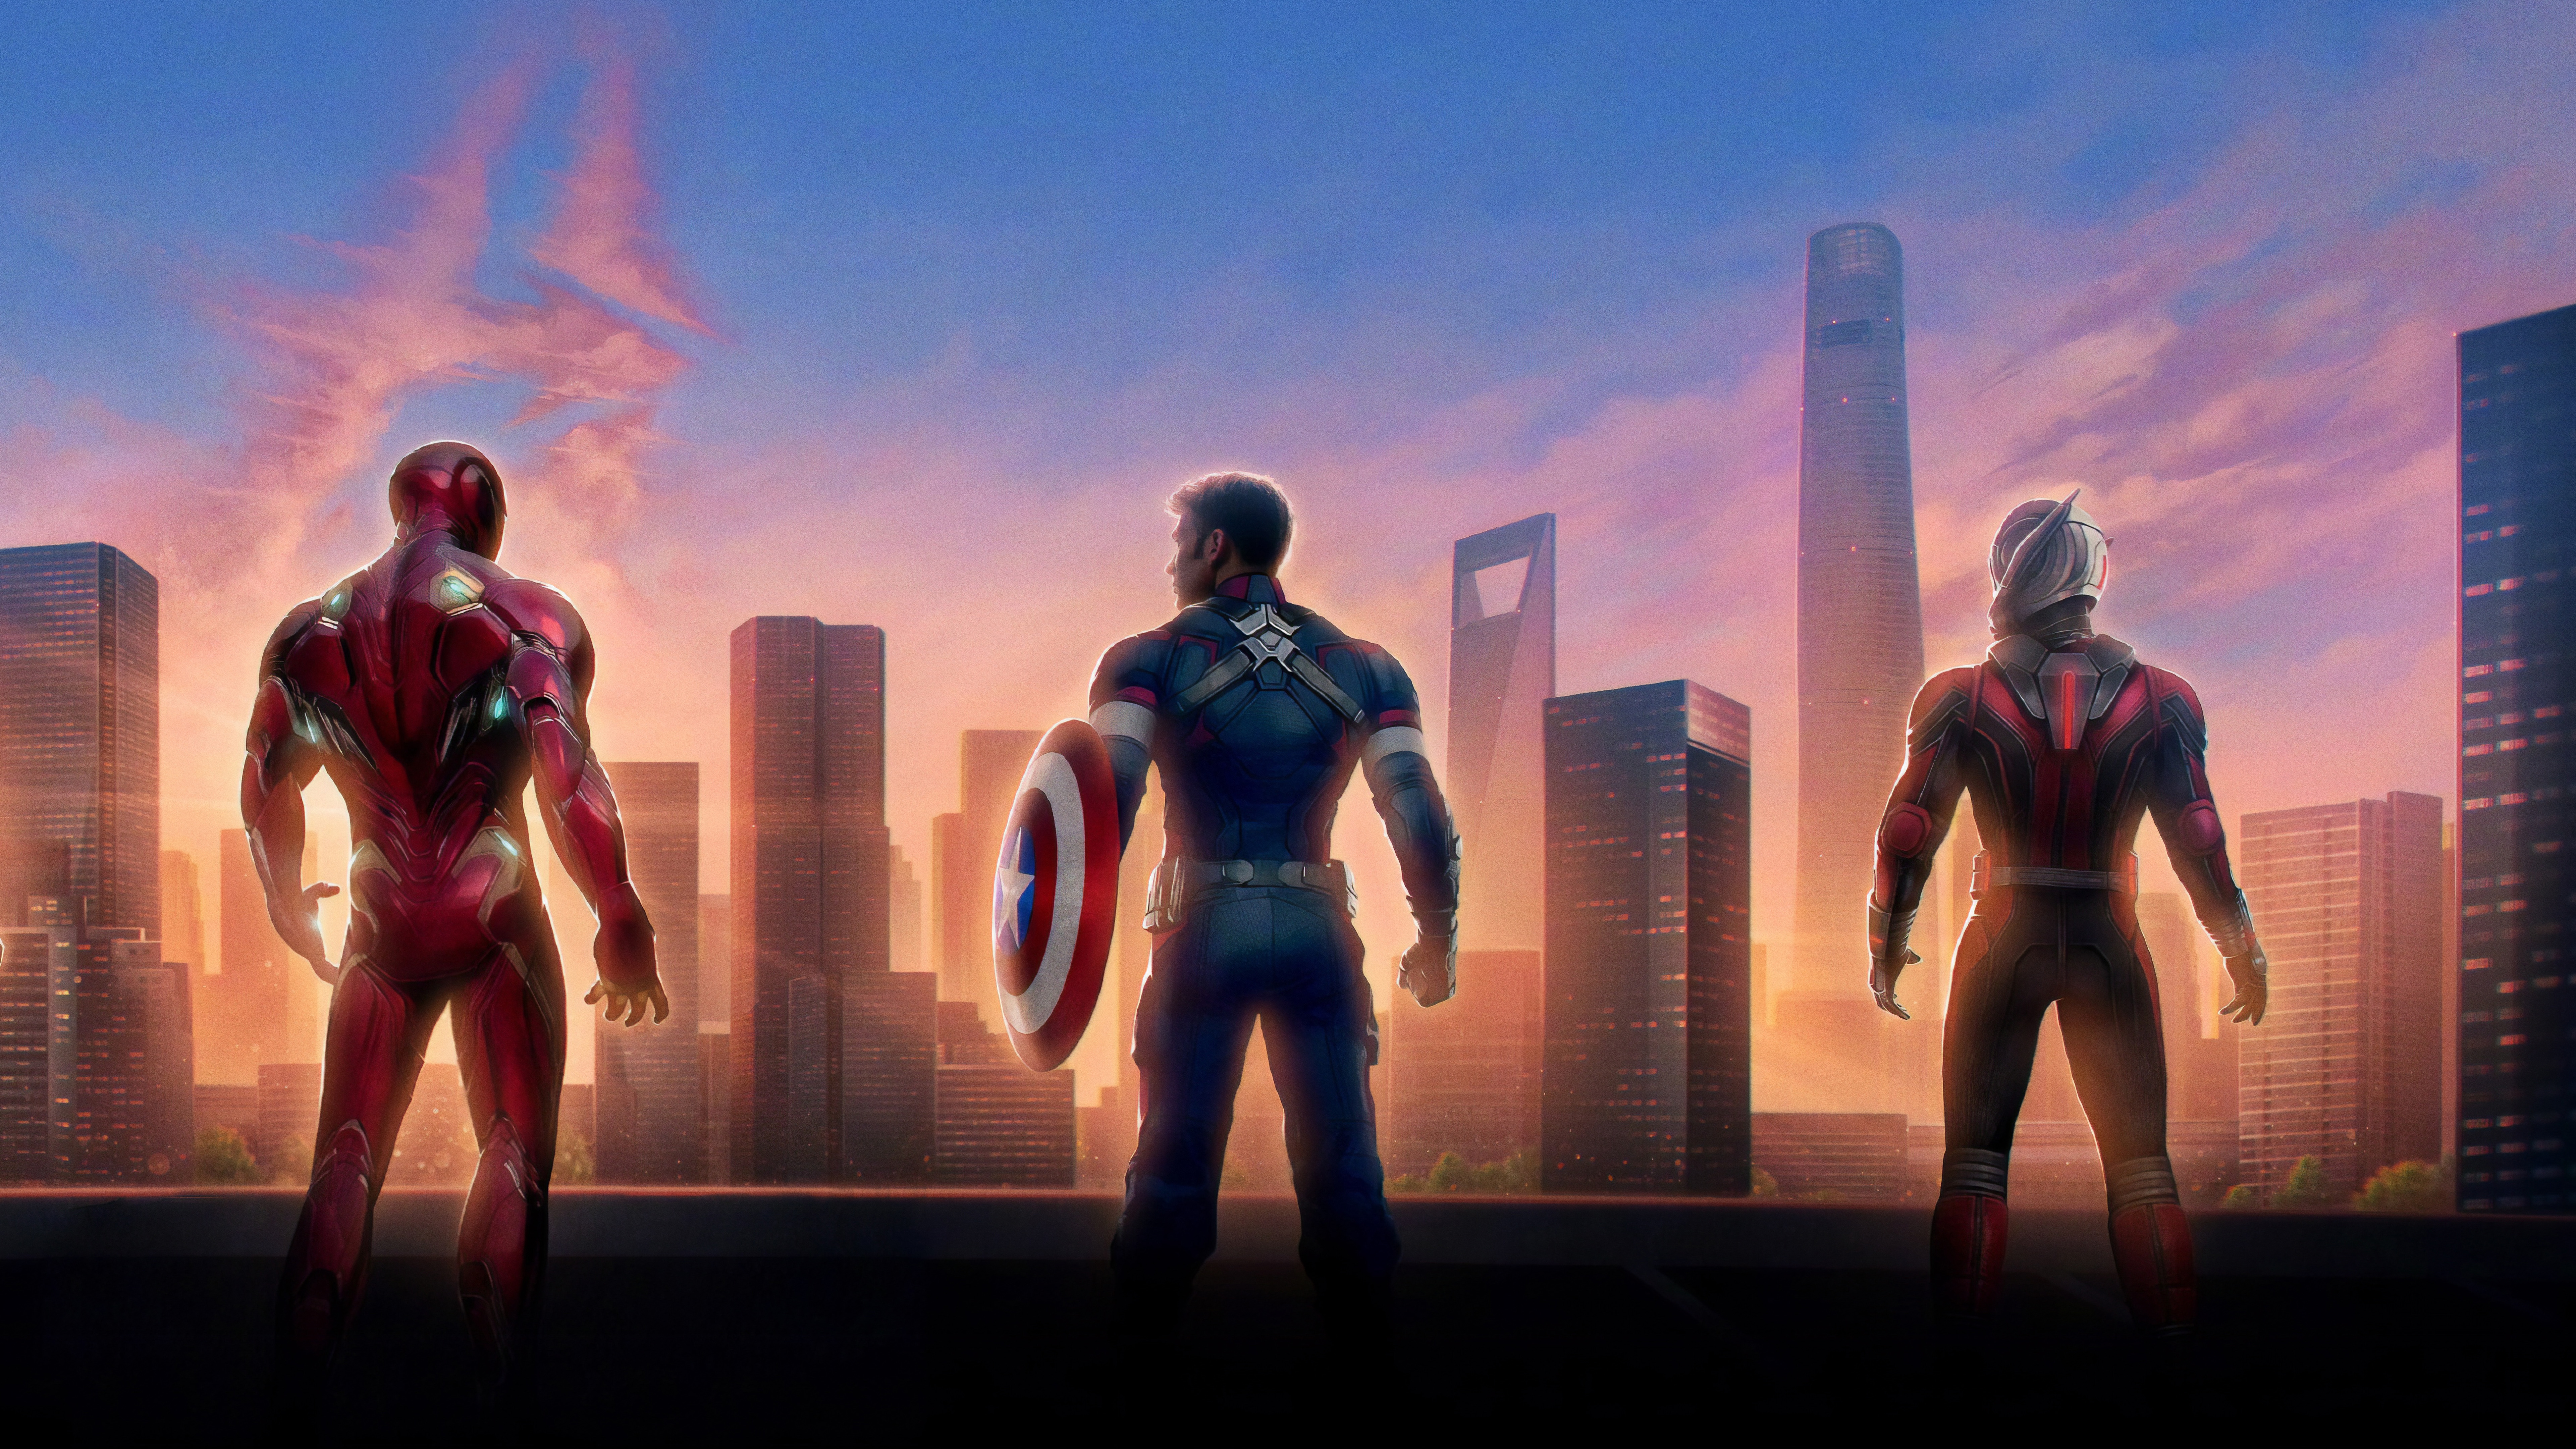 Iron Man Captain America Ant-Man in Avengers Endgame 4K 8K Wallpapers